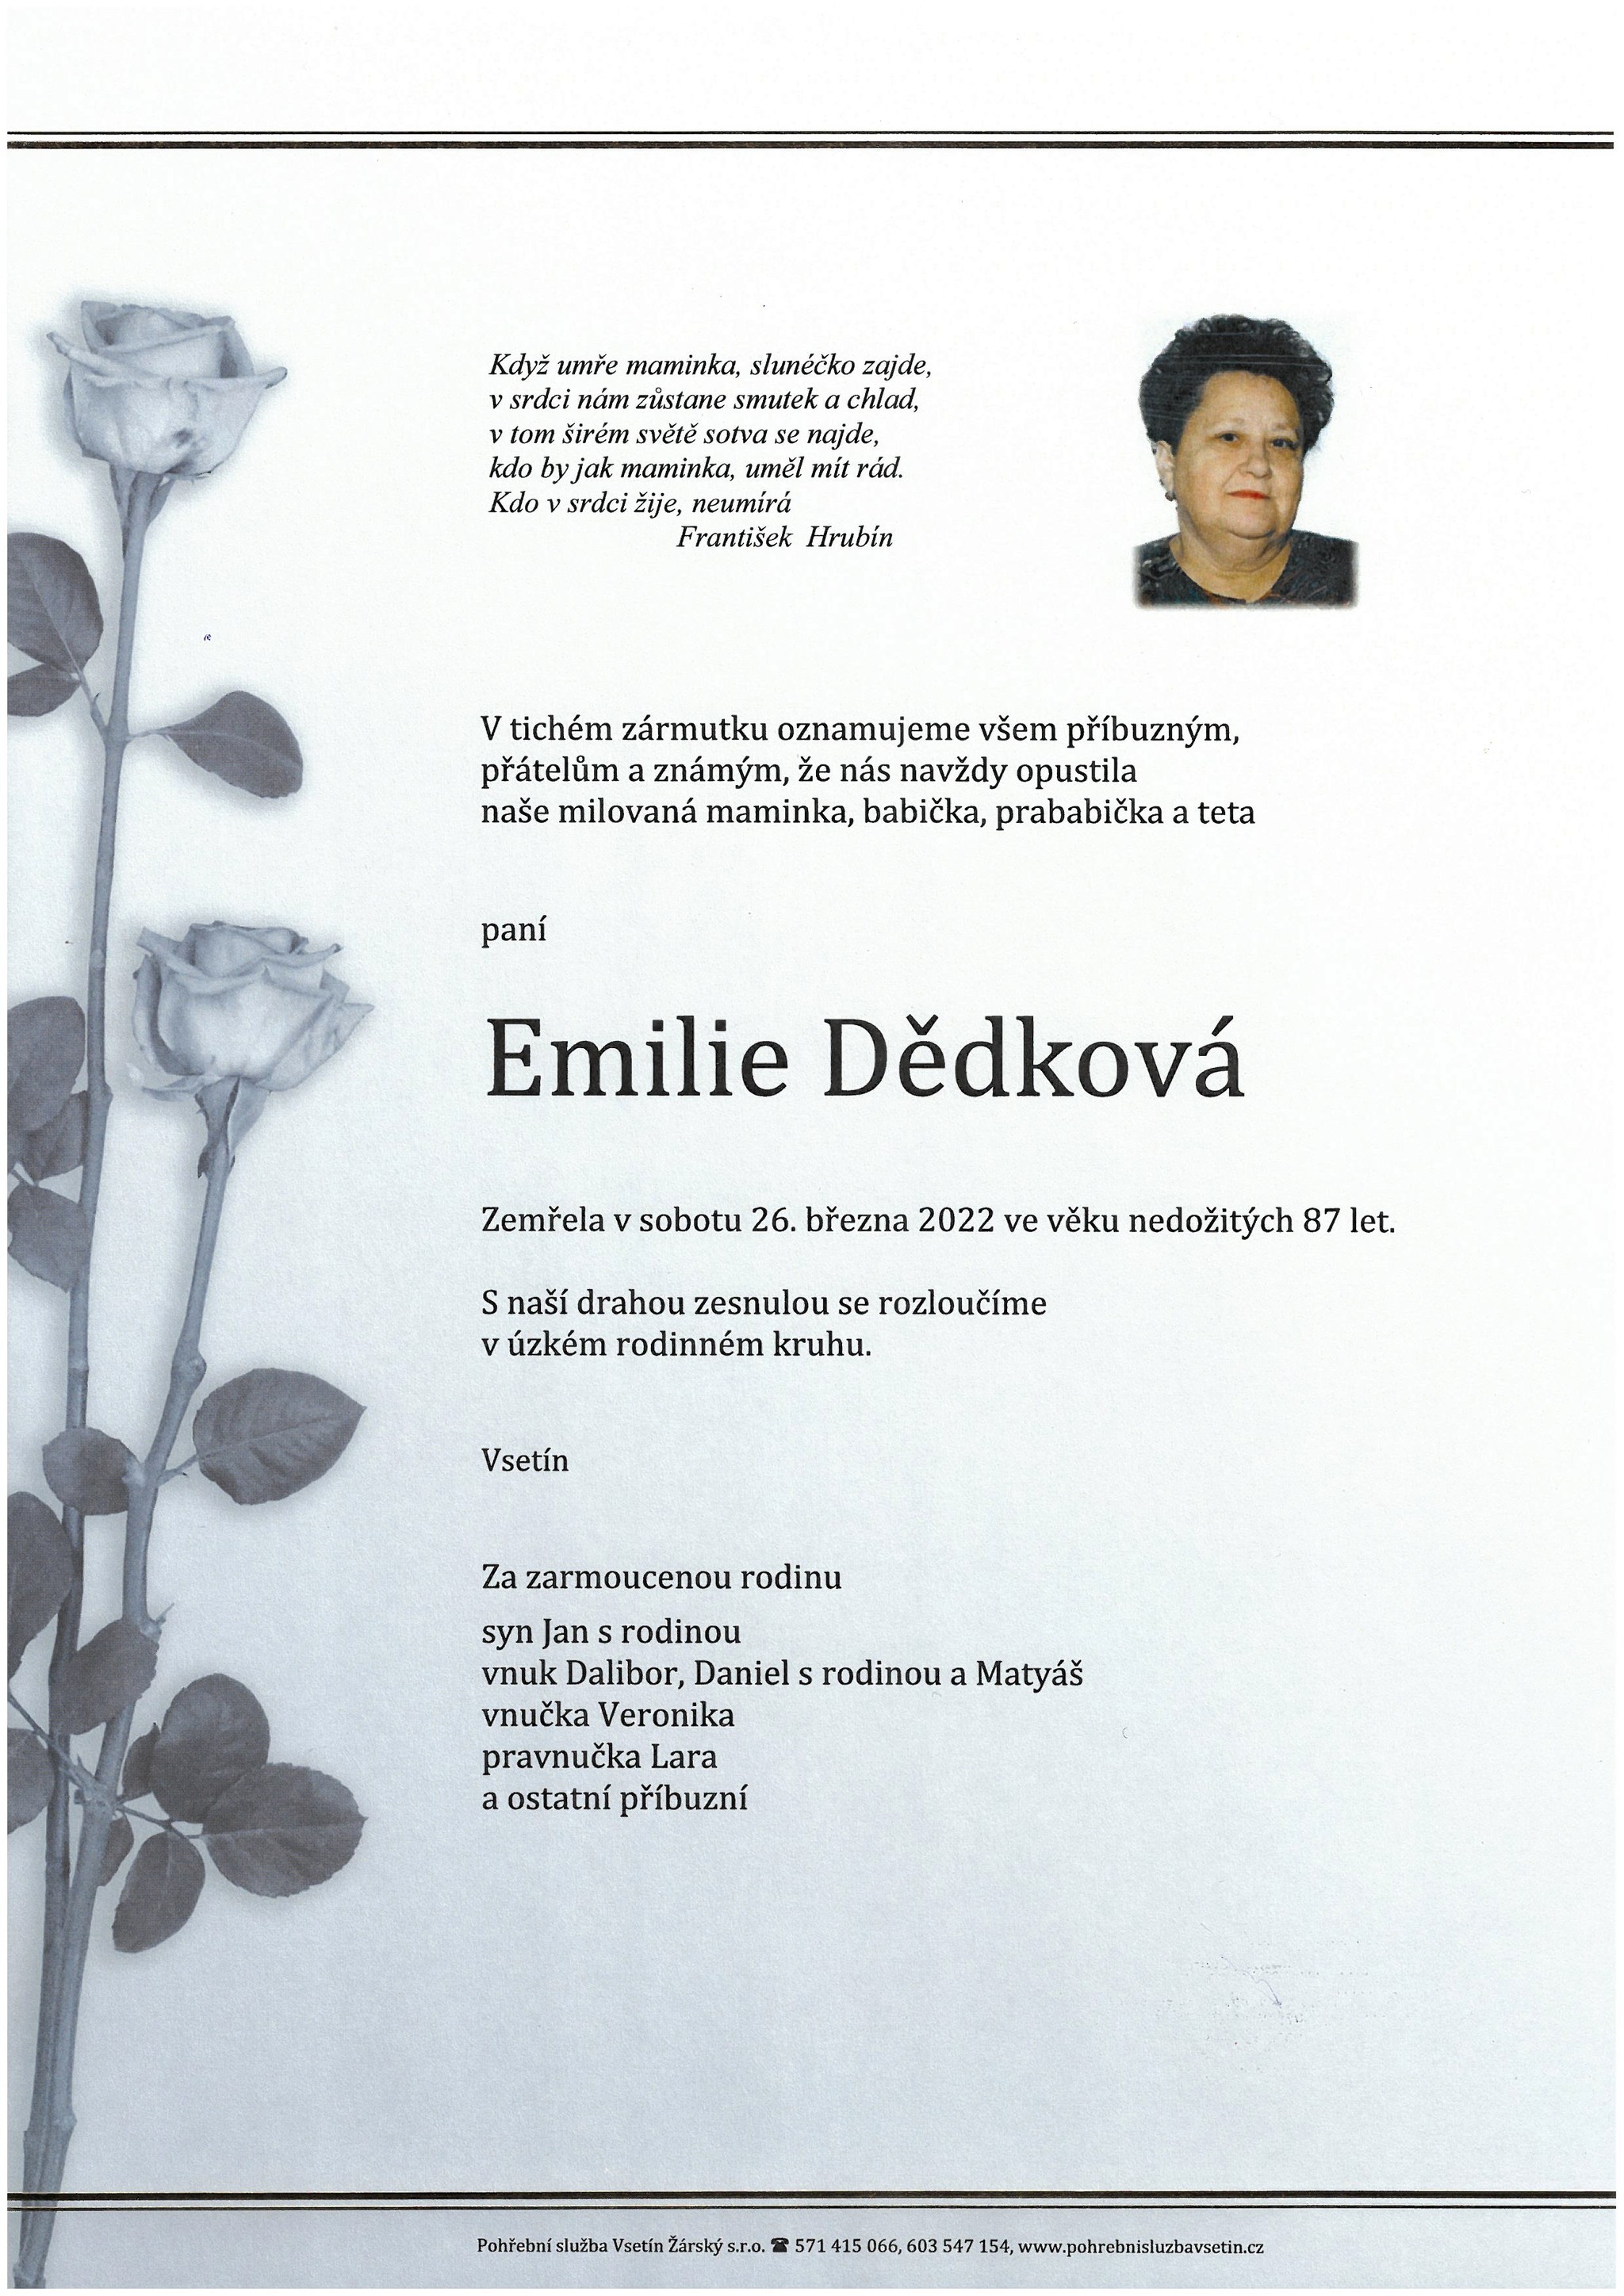 Emilie Dědková